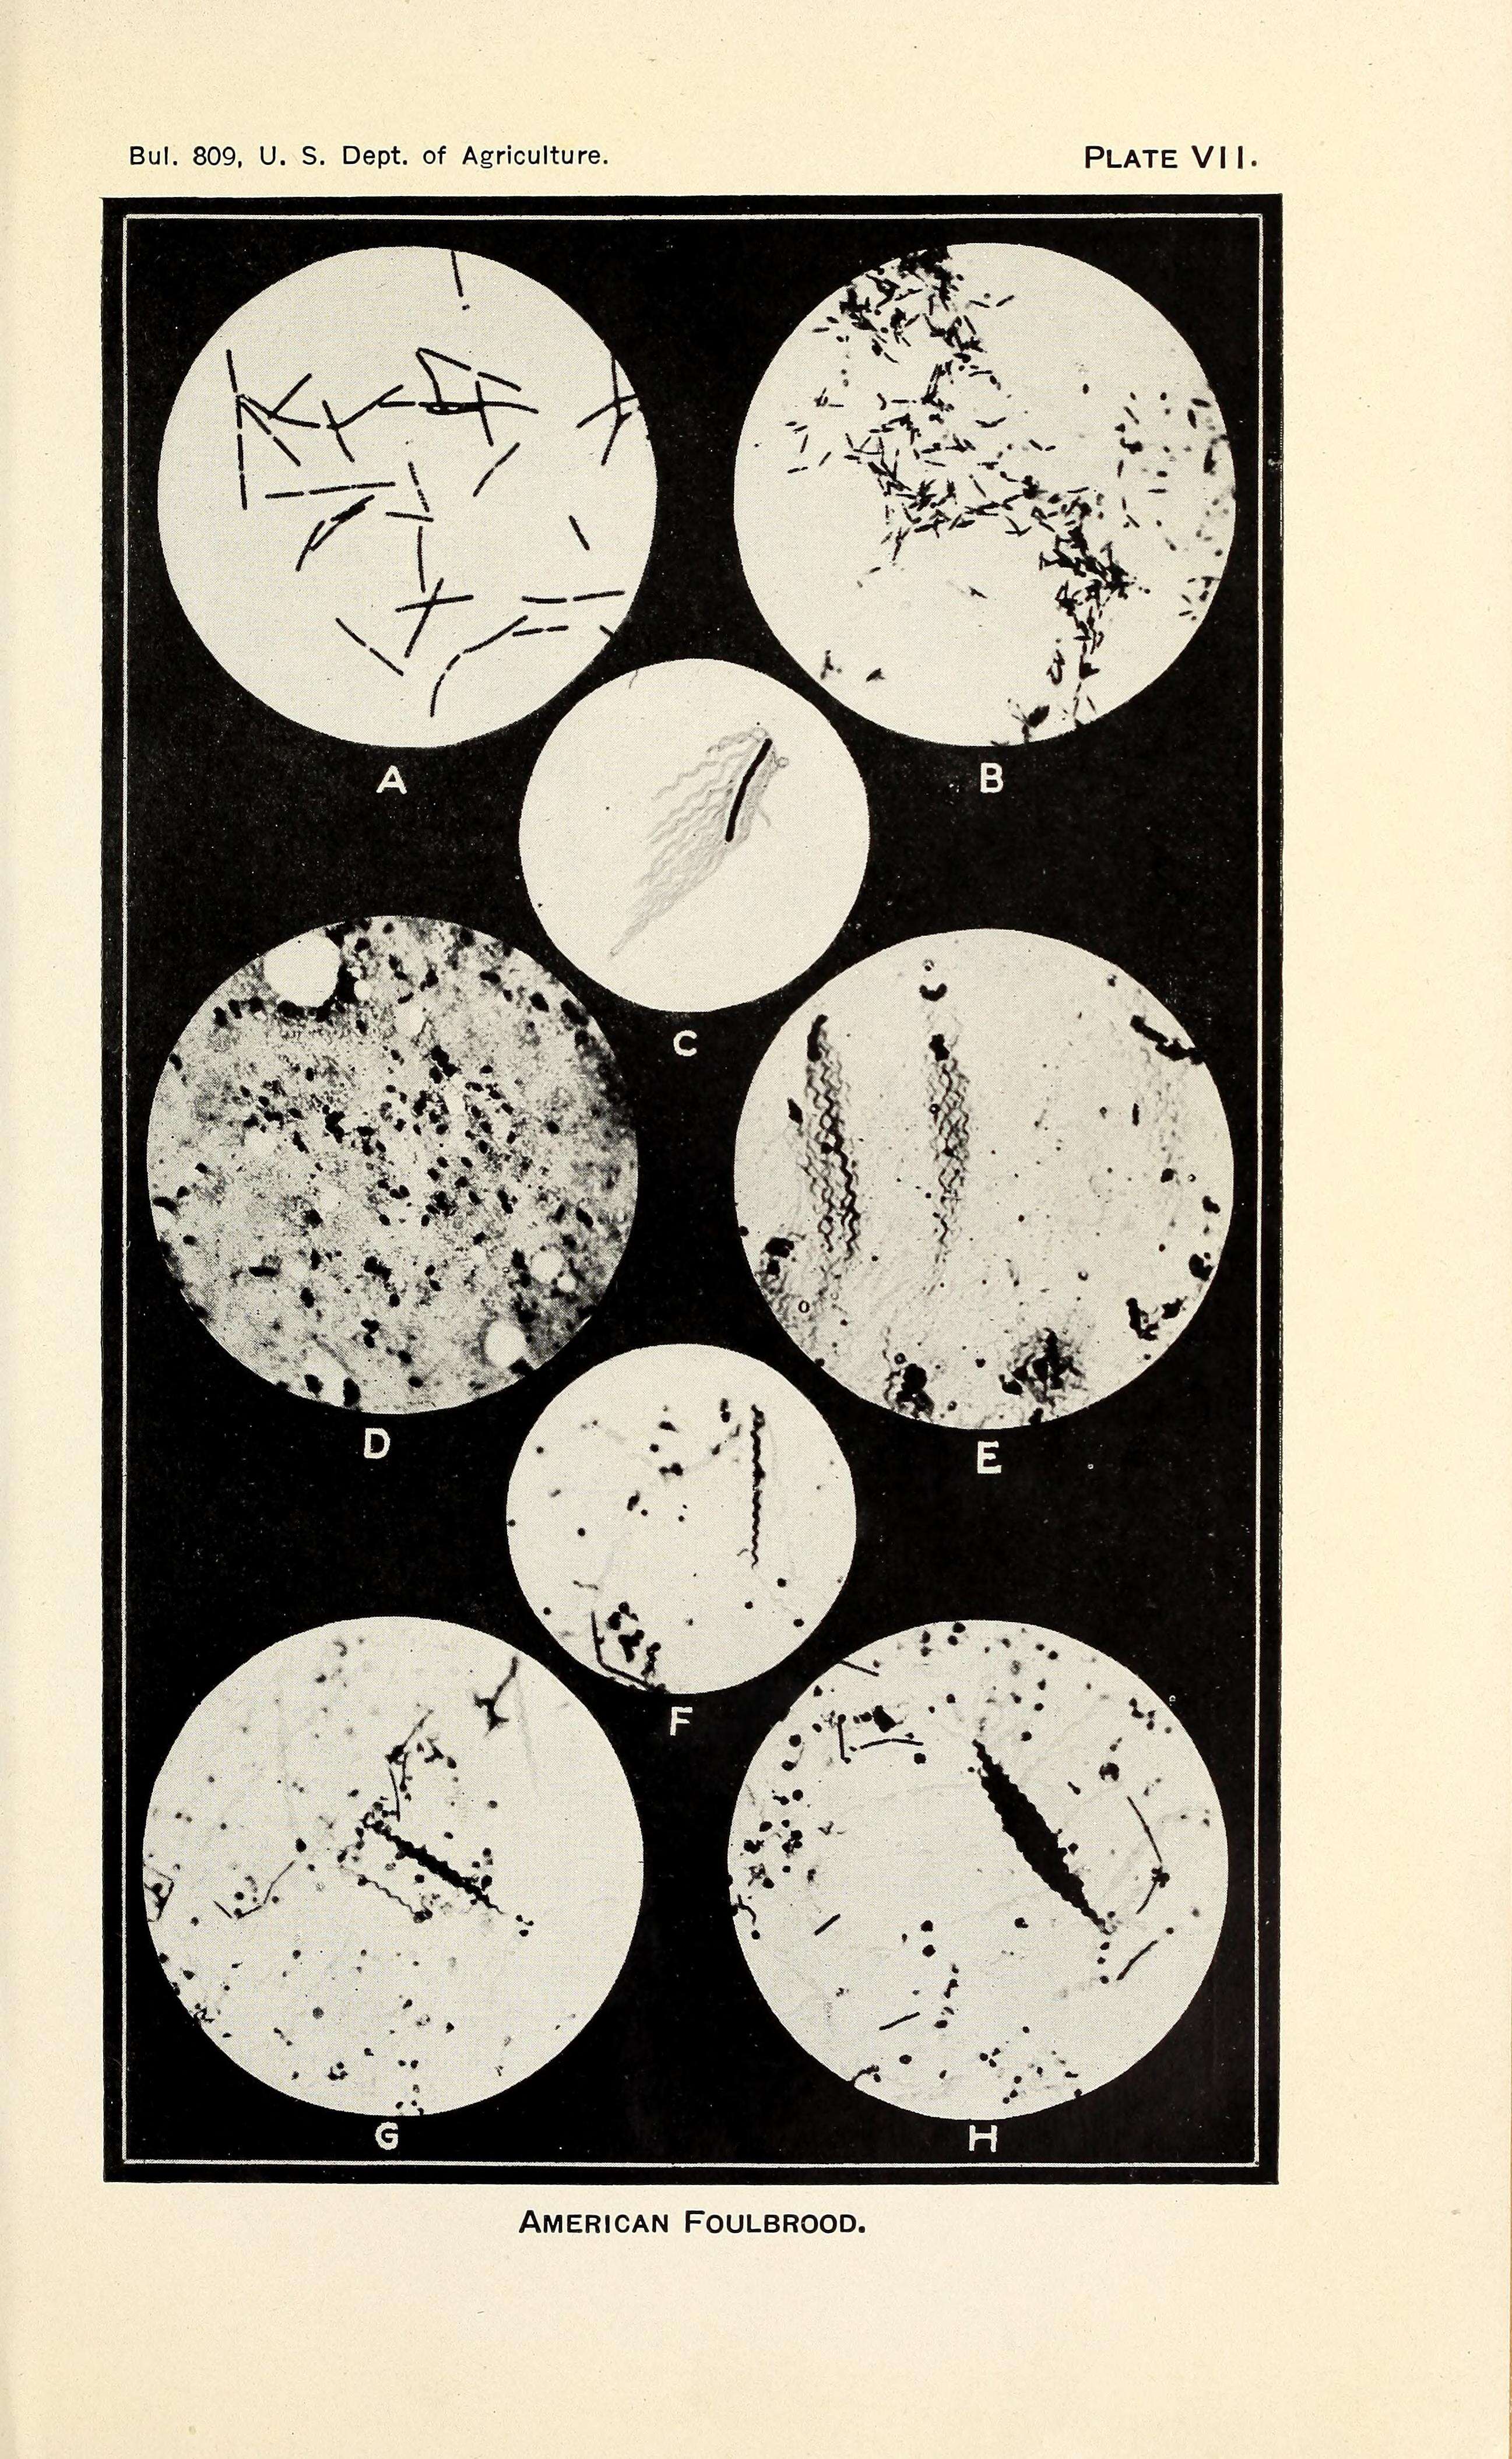 Image of Paenibacillus larvae